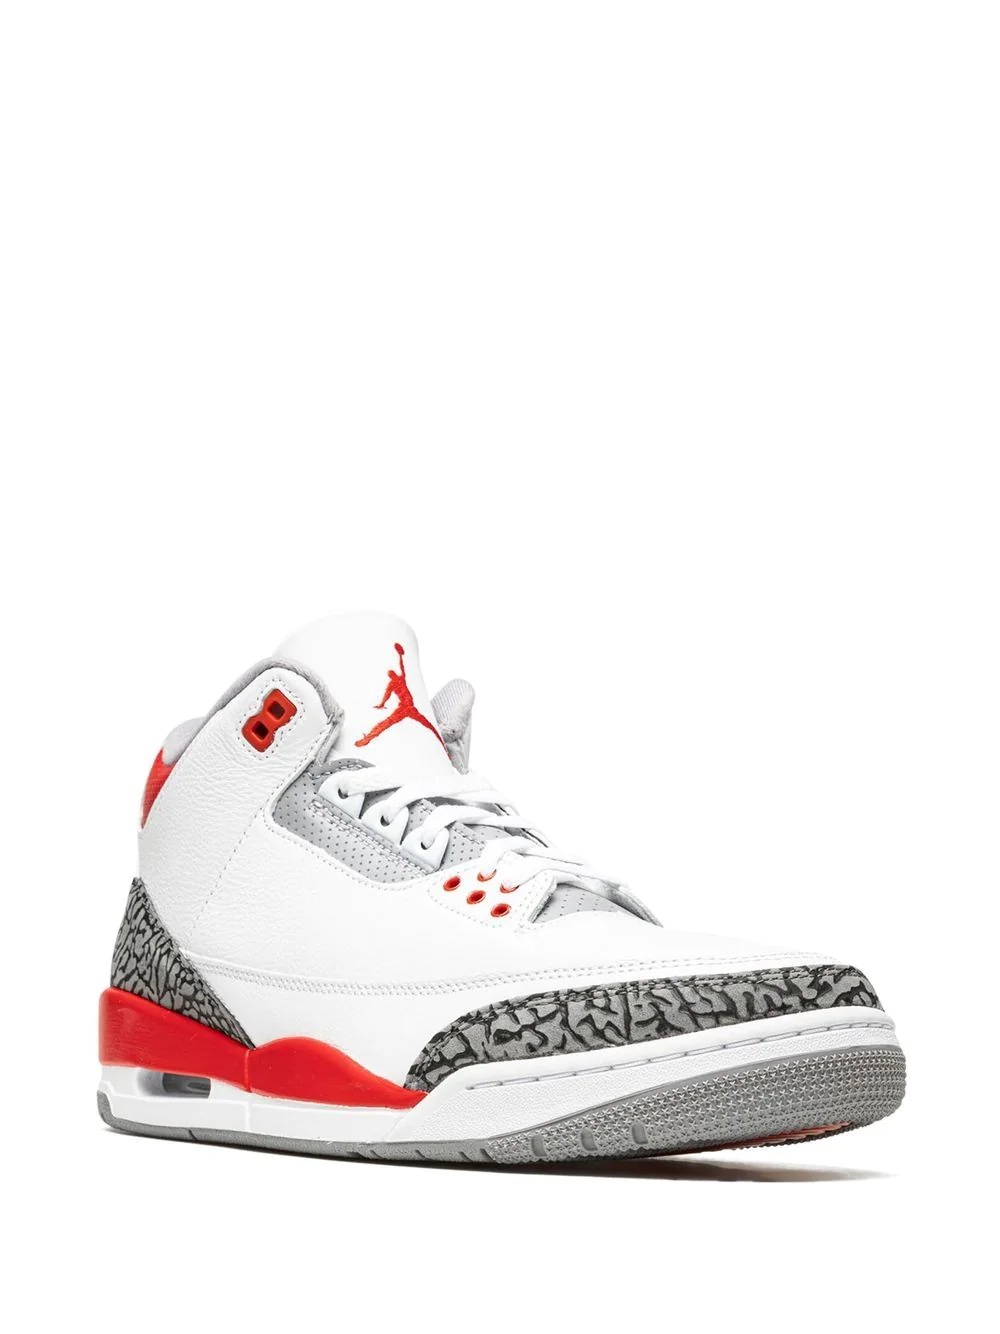 Air Jordan 3 Retro OG sneakers - 2